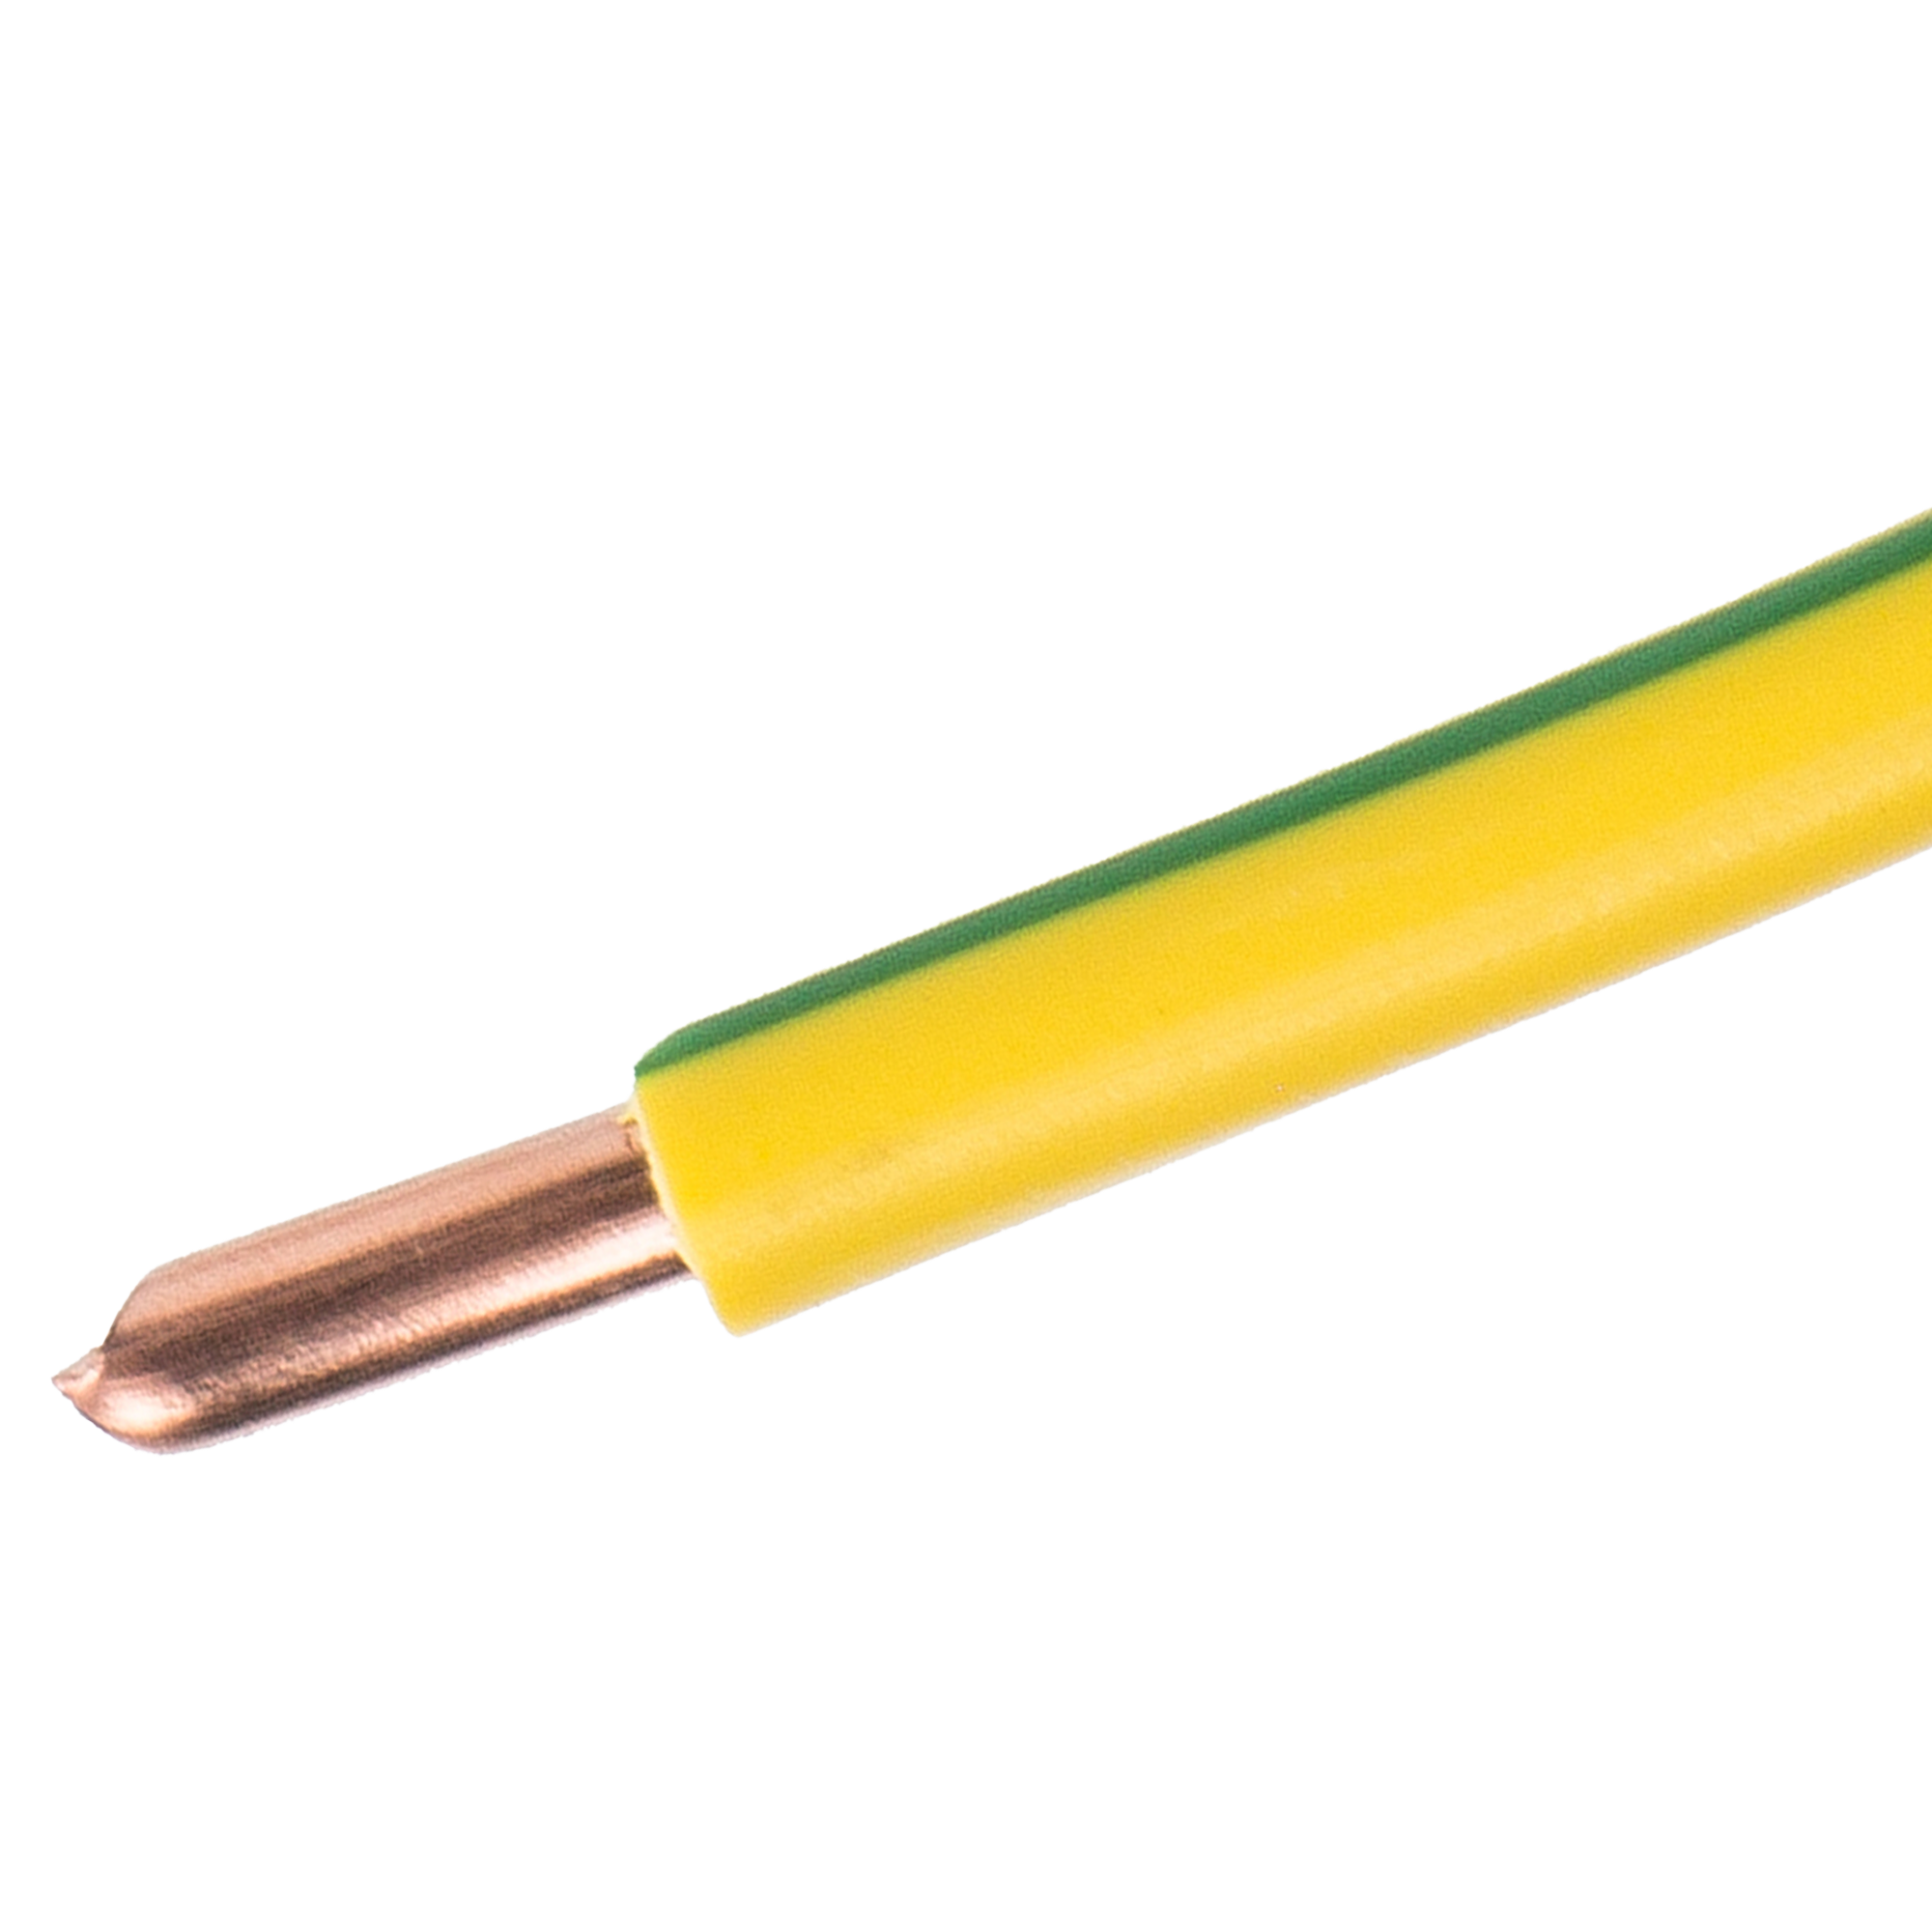  ПУВ 1x6 мм на отрез ГОСТ цвет желтый по цене 172 ₽/м  в .